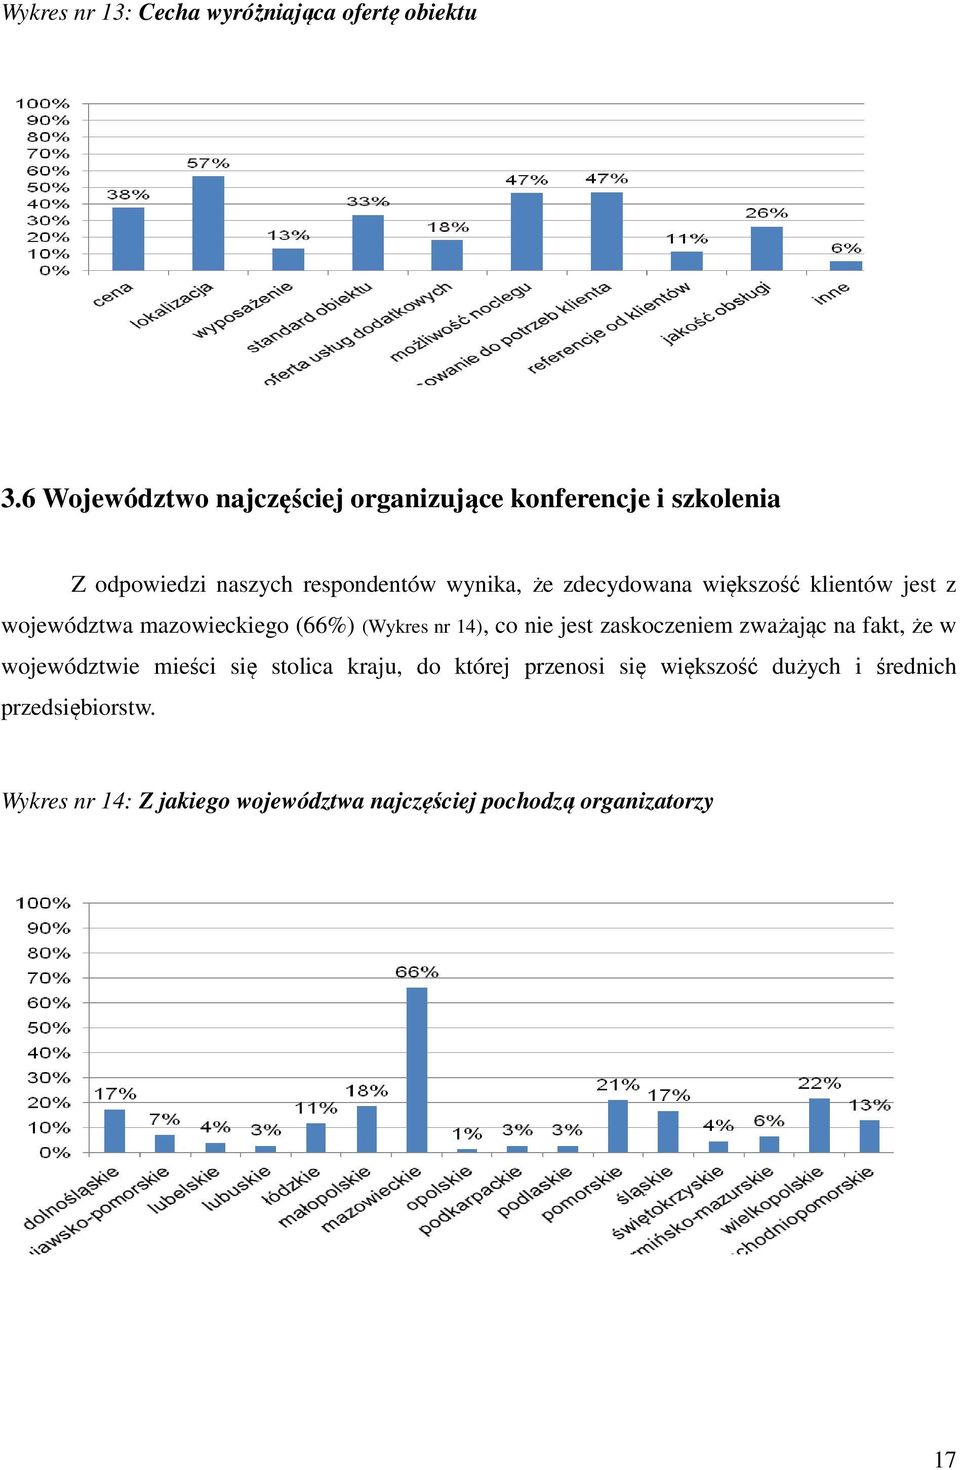 zdecydowana większość klientów jest z województwa mazowieckiego (66%) (Wykres nr 14), co nie jest zaskoczeniem